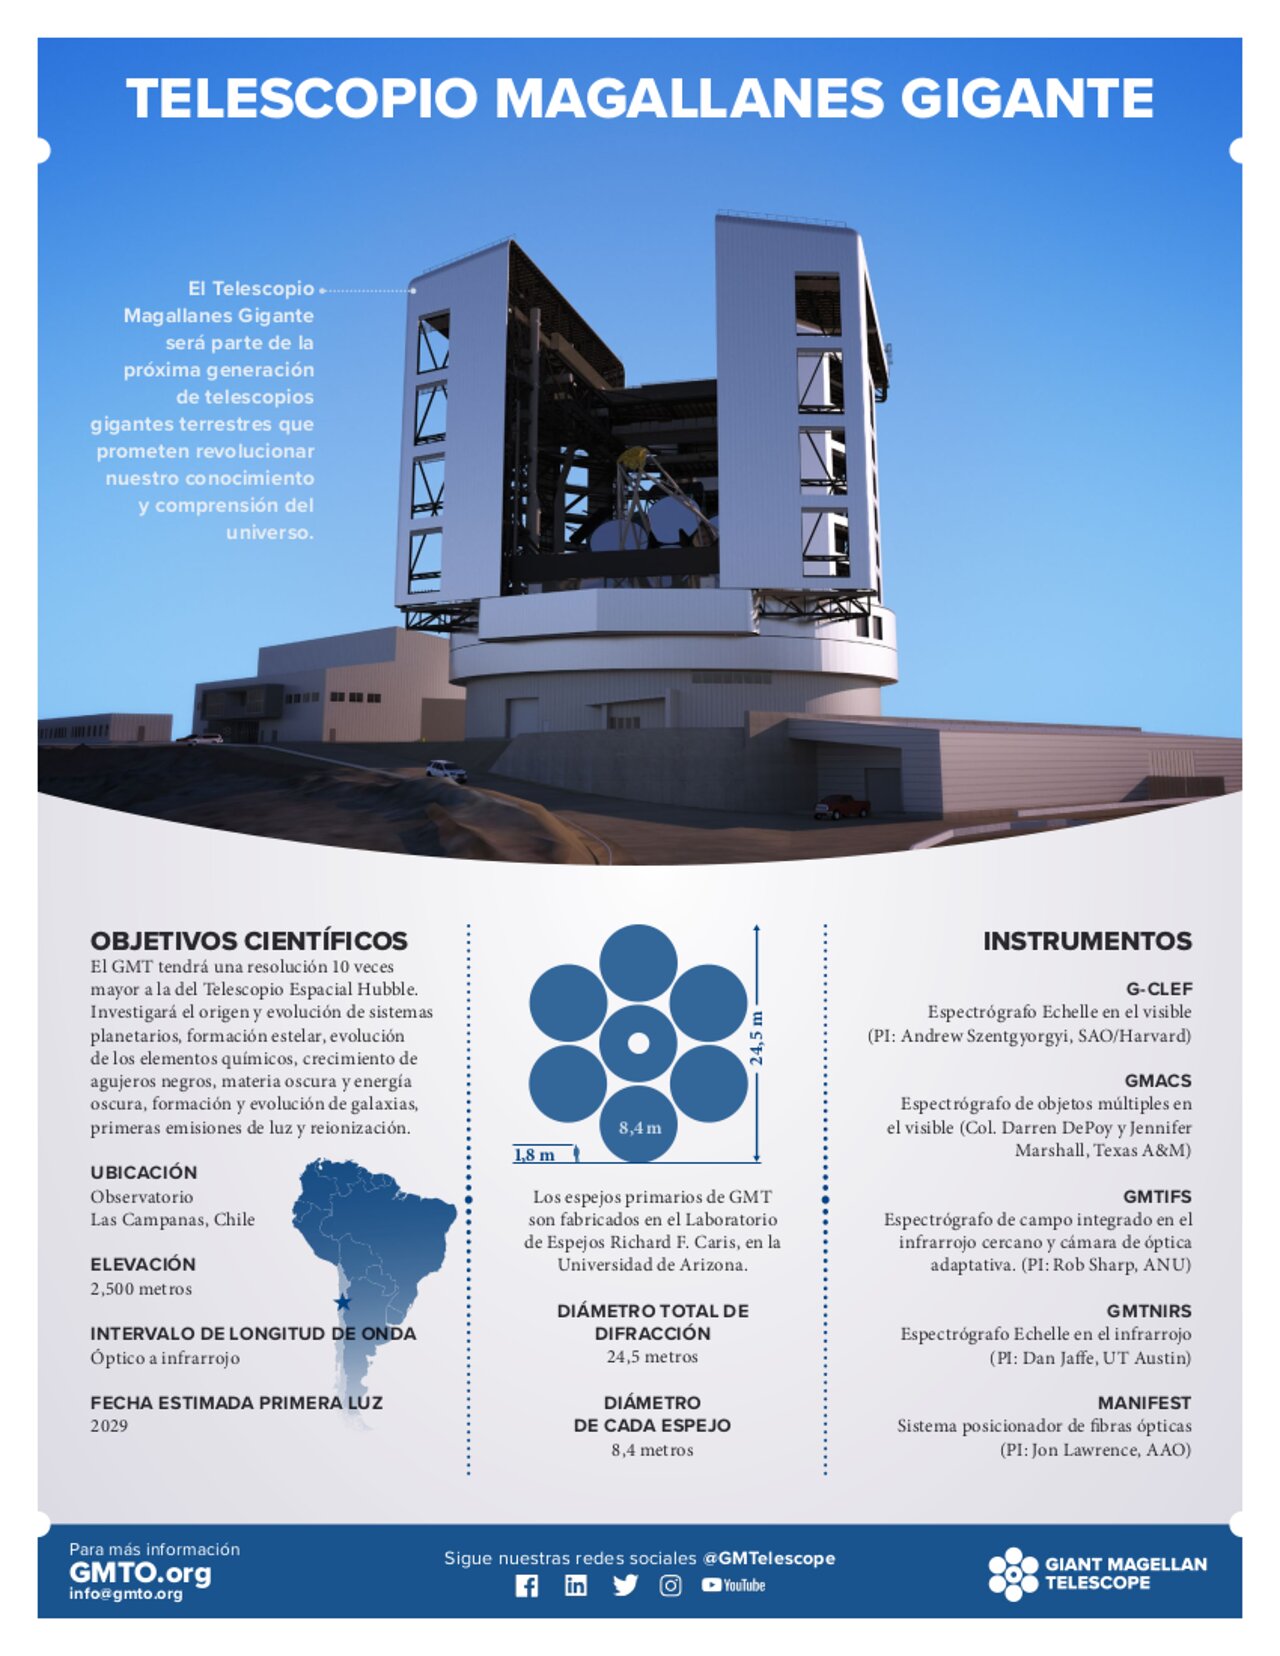 Handouts: Telescopio Magallanes Gigante